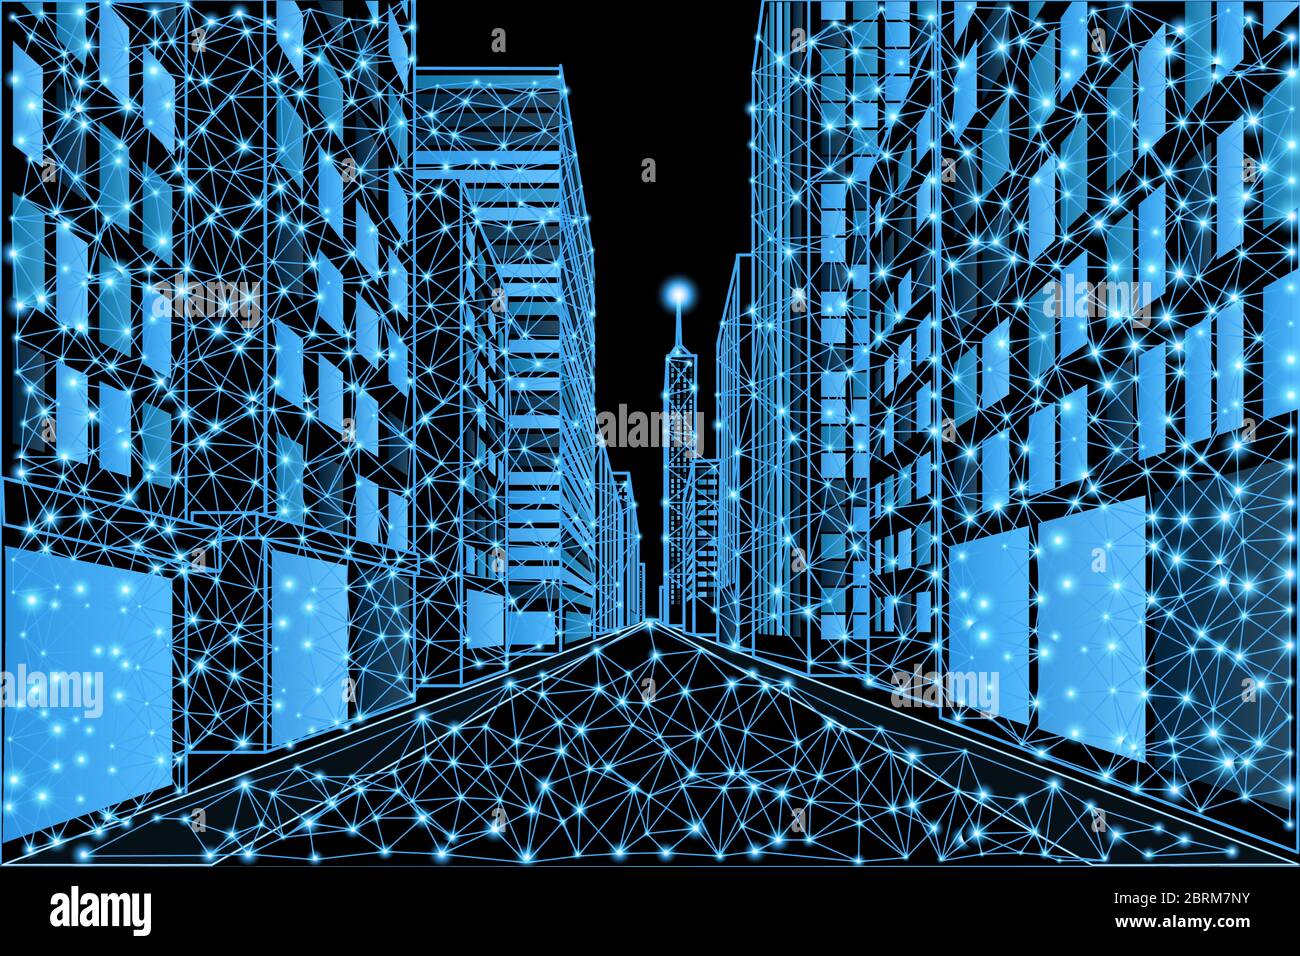 Rue d'une métropole moderne avec des immeubles de haute hauteur dans un style bas en polyéthylène Illustration de Vecteur